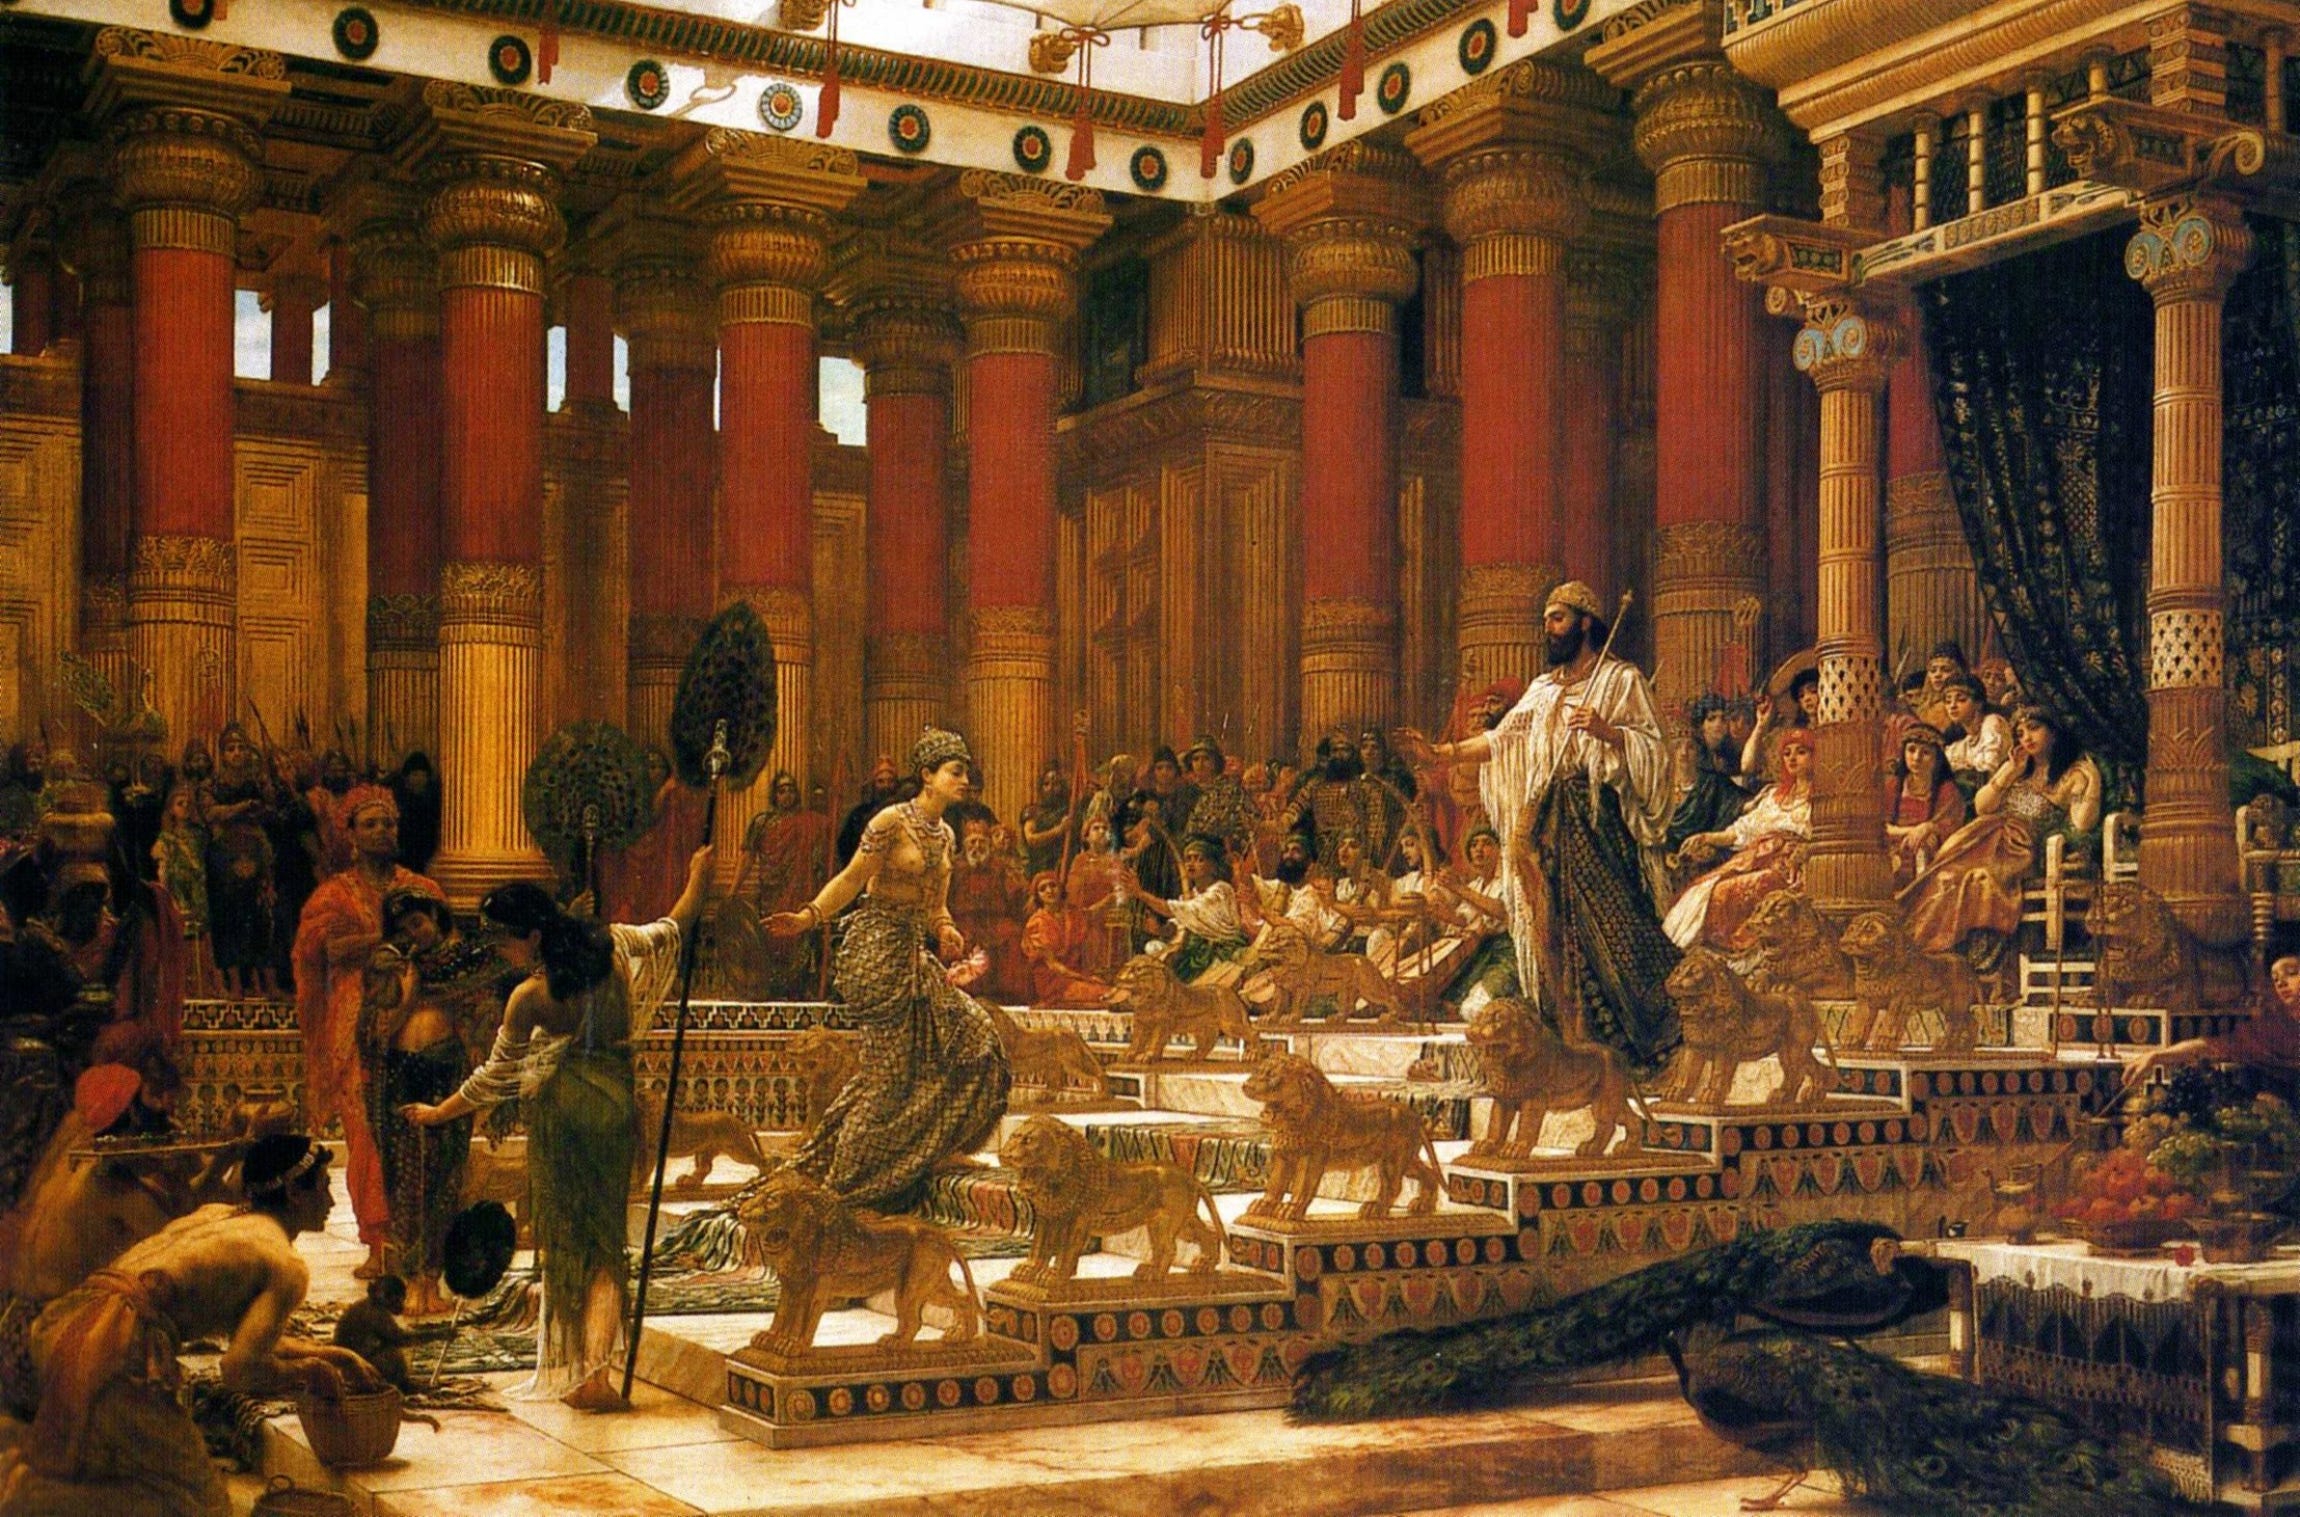 Throne of Solomon - Wikipedia